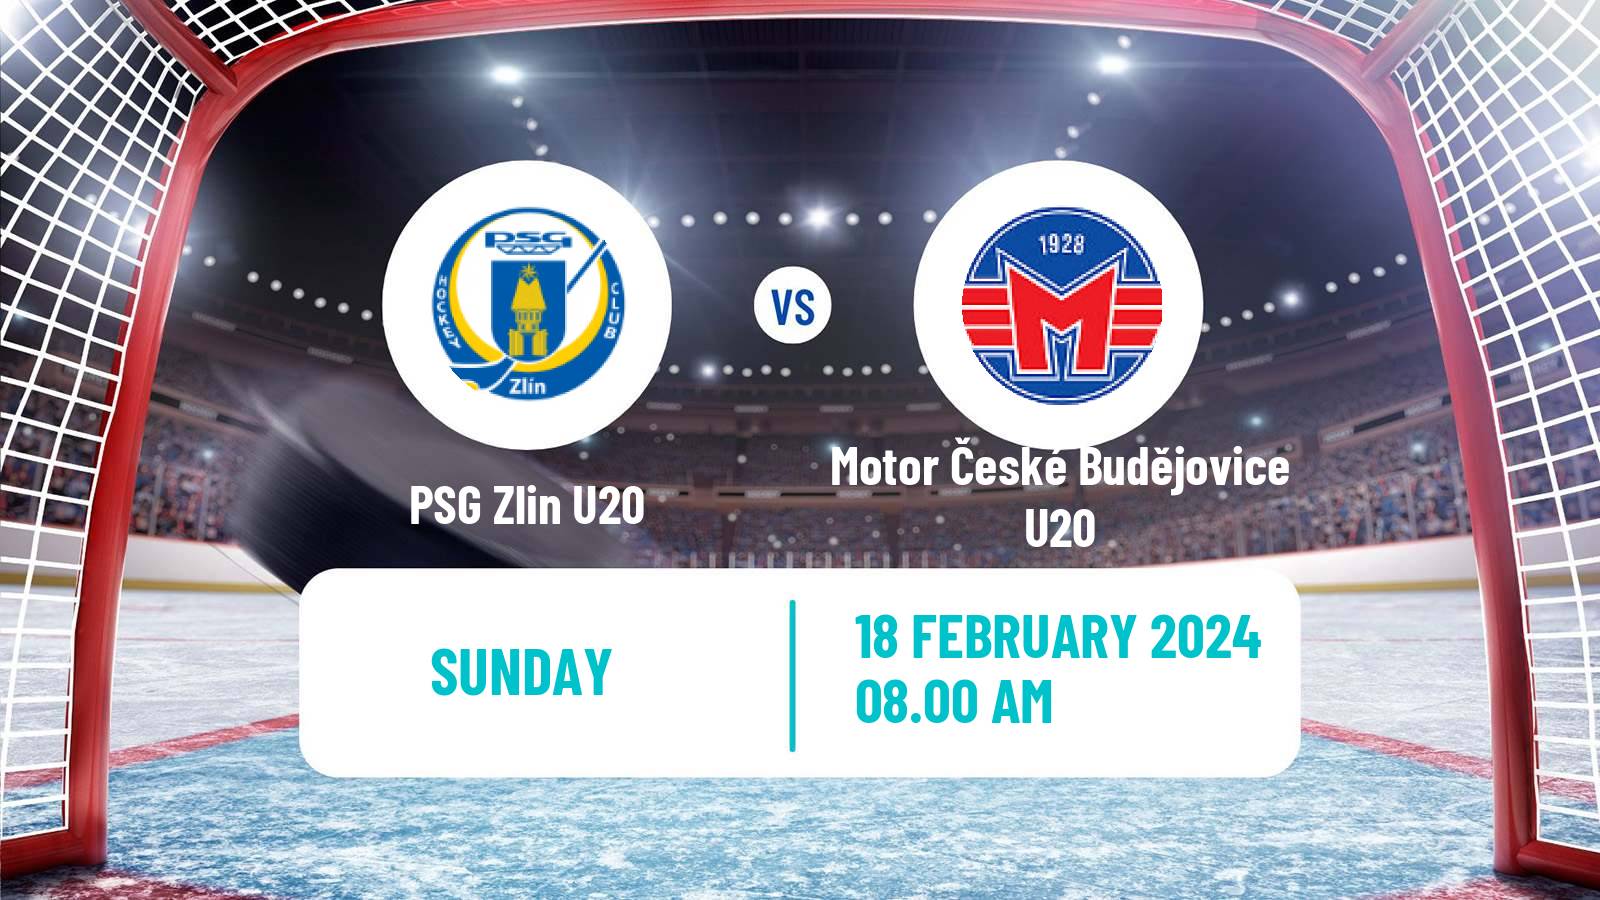 Hockey Czech ELJ Zlin U20 - Motor České Budějovice U20